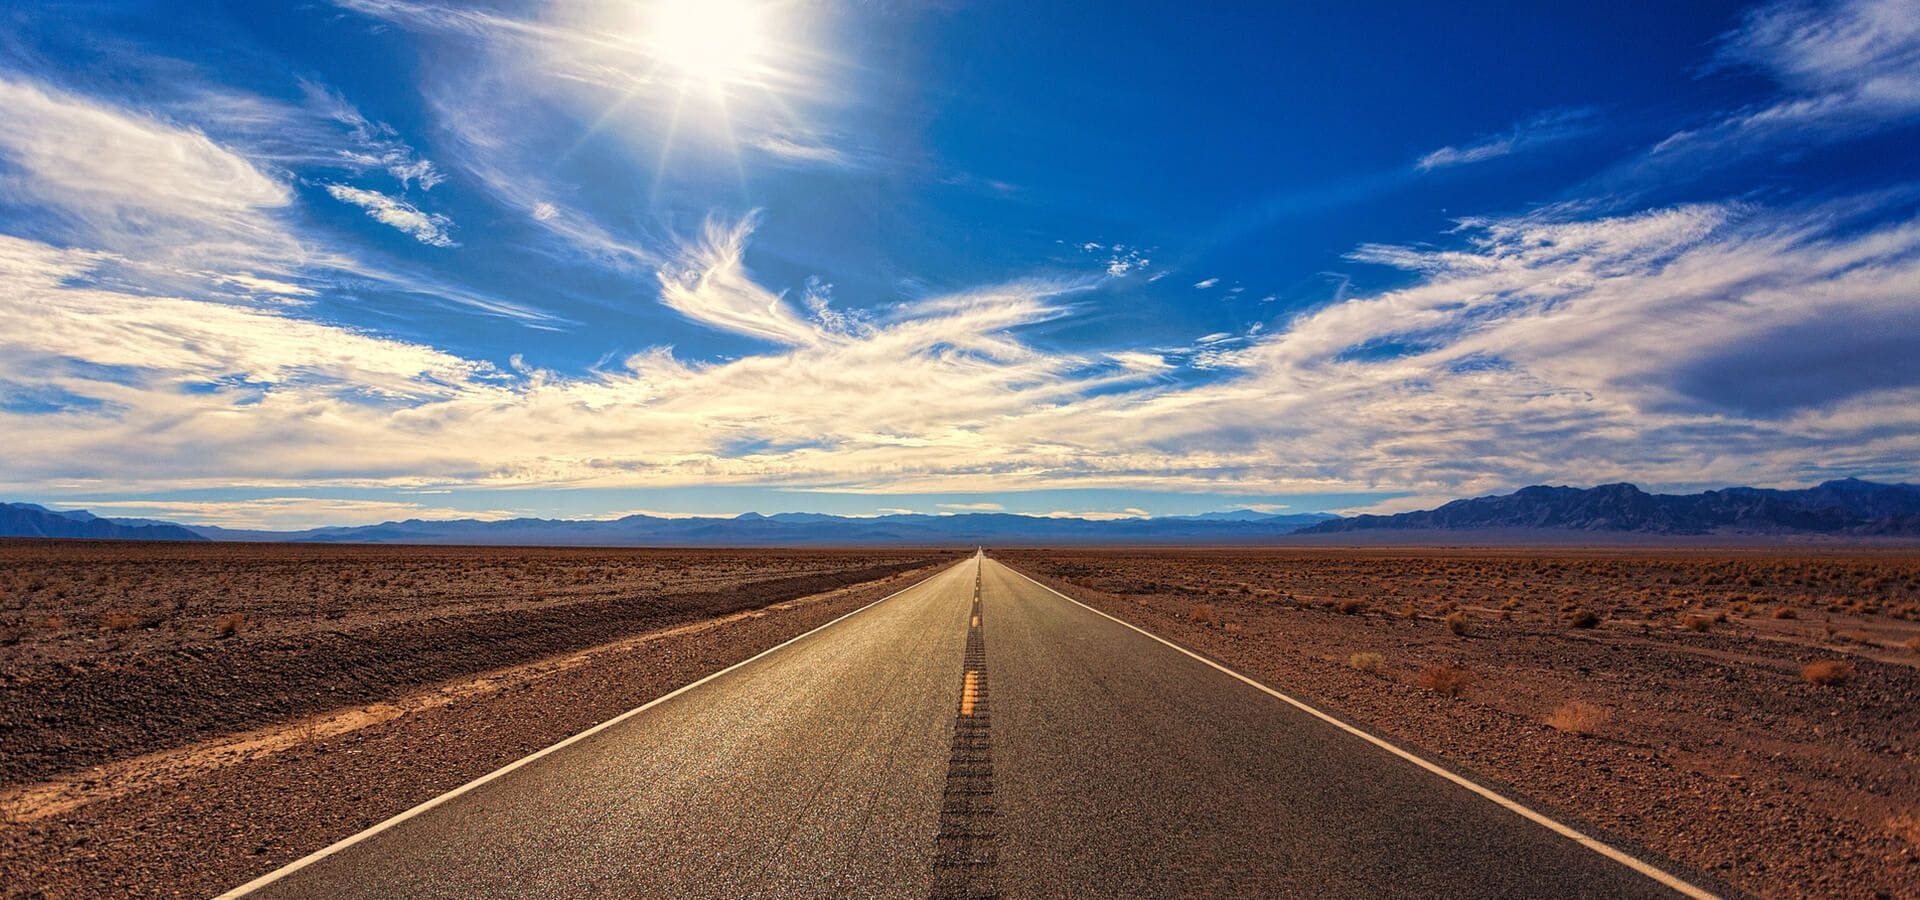 Carretera en un desierto